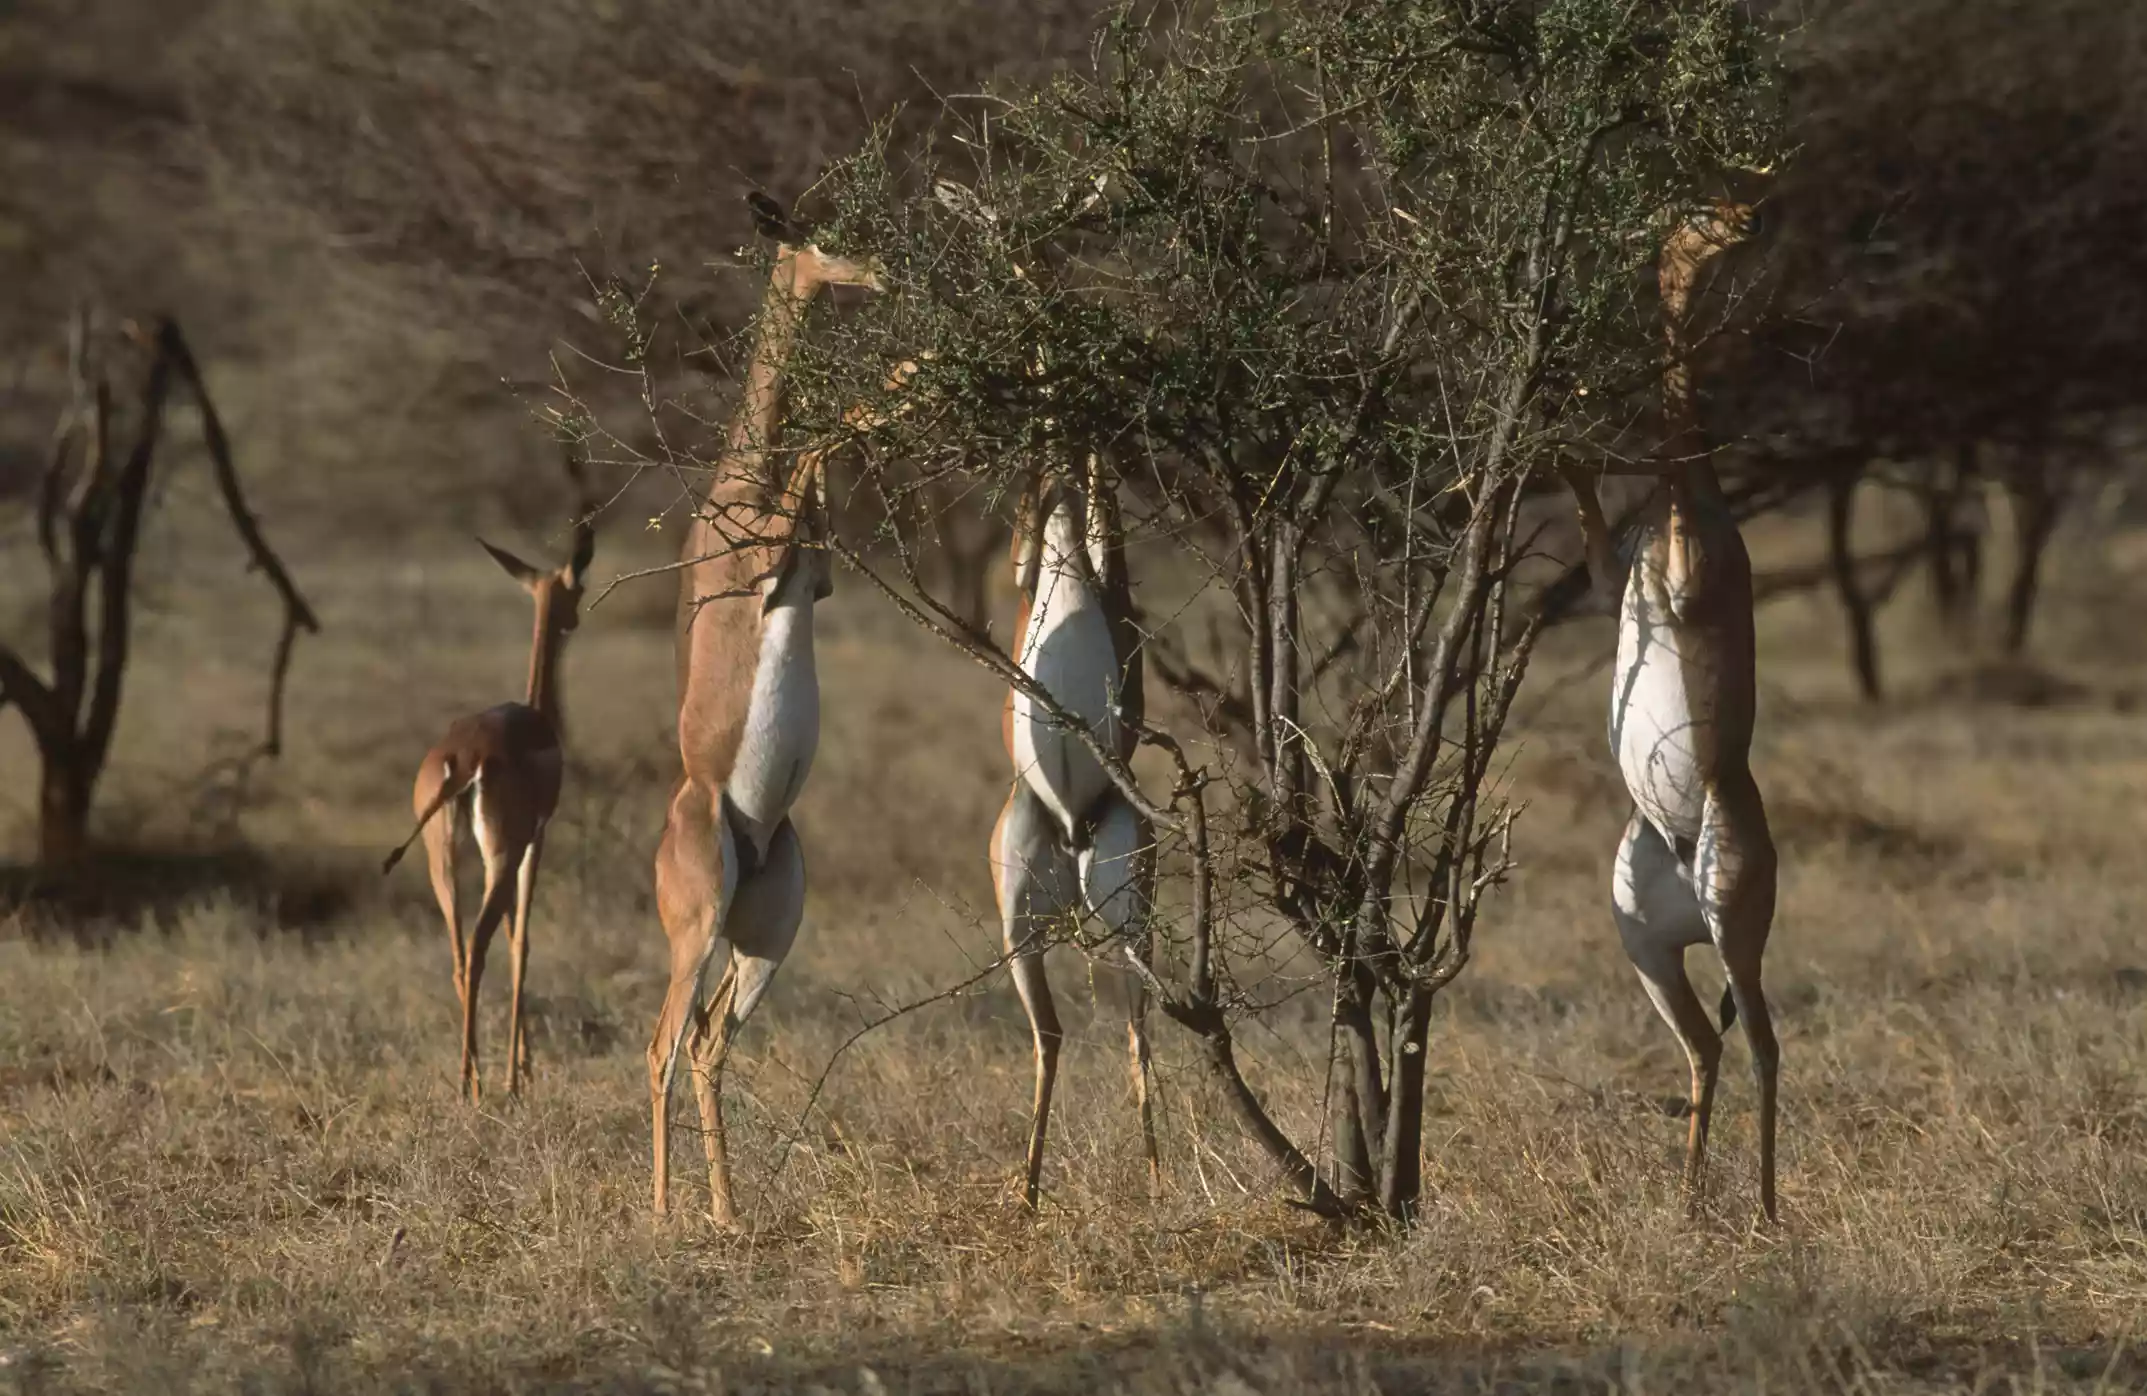 Геренуки (Litocranius walleri) питаются кустами в национальном заповеднике Самбуру, Кения